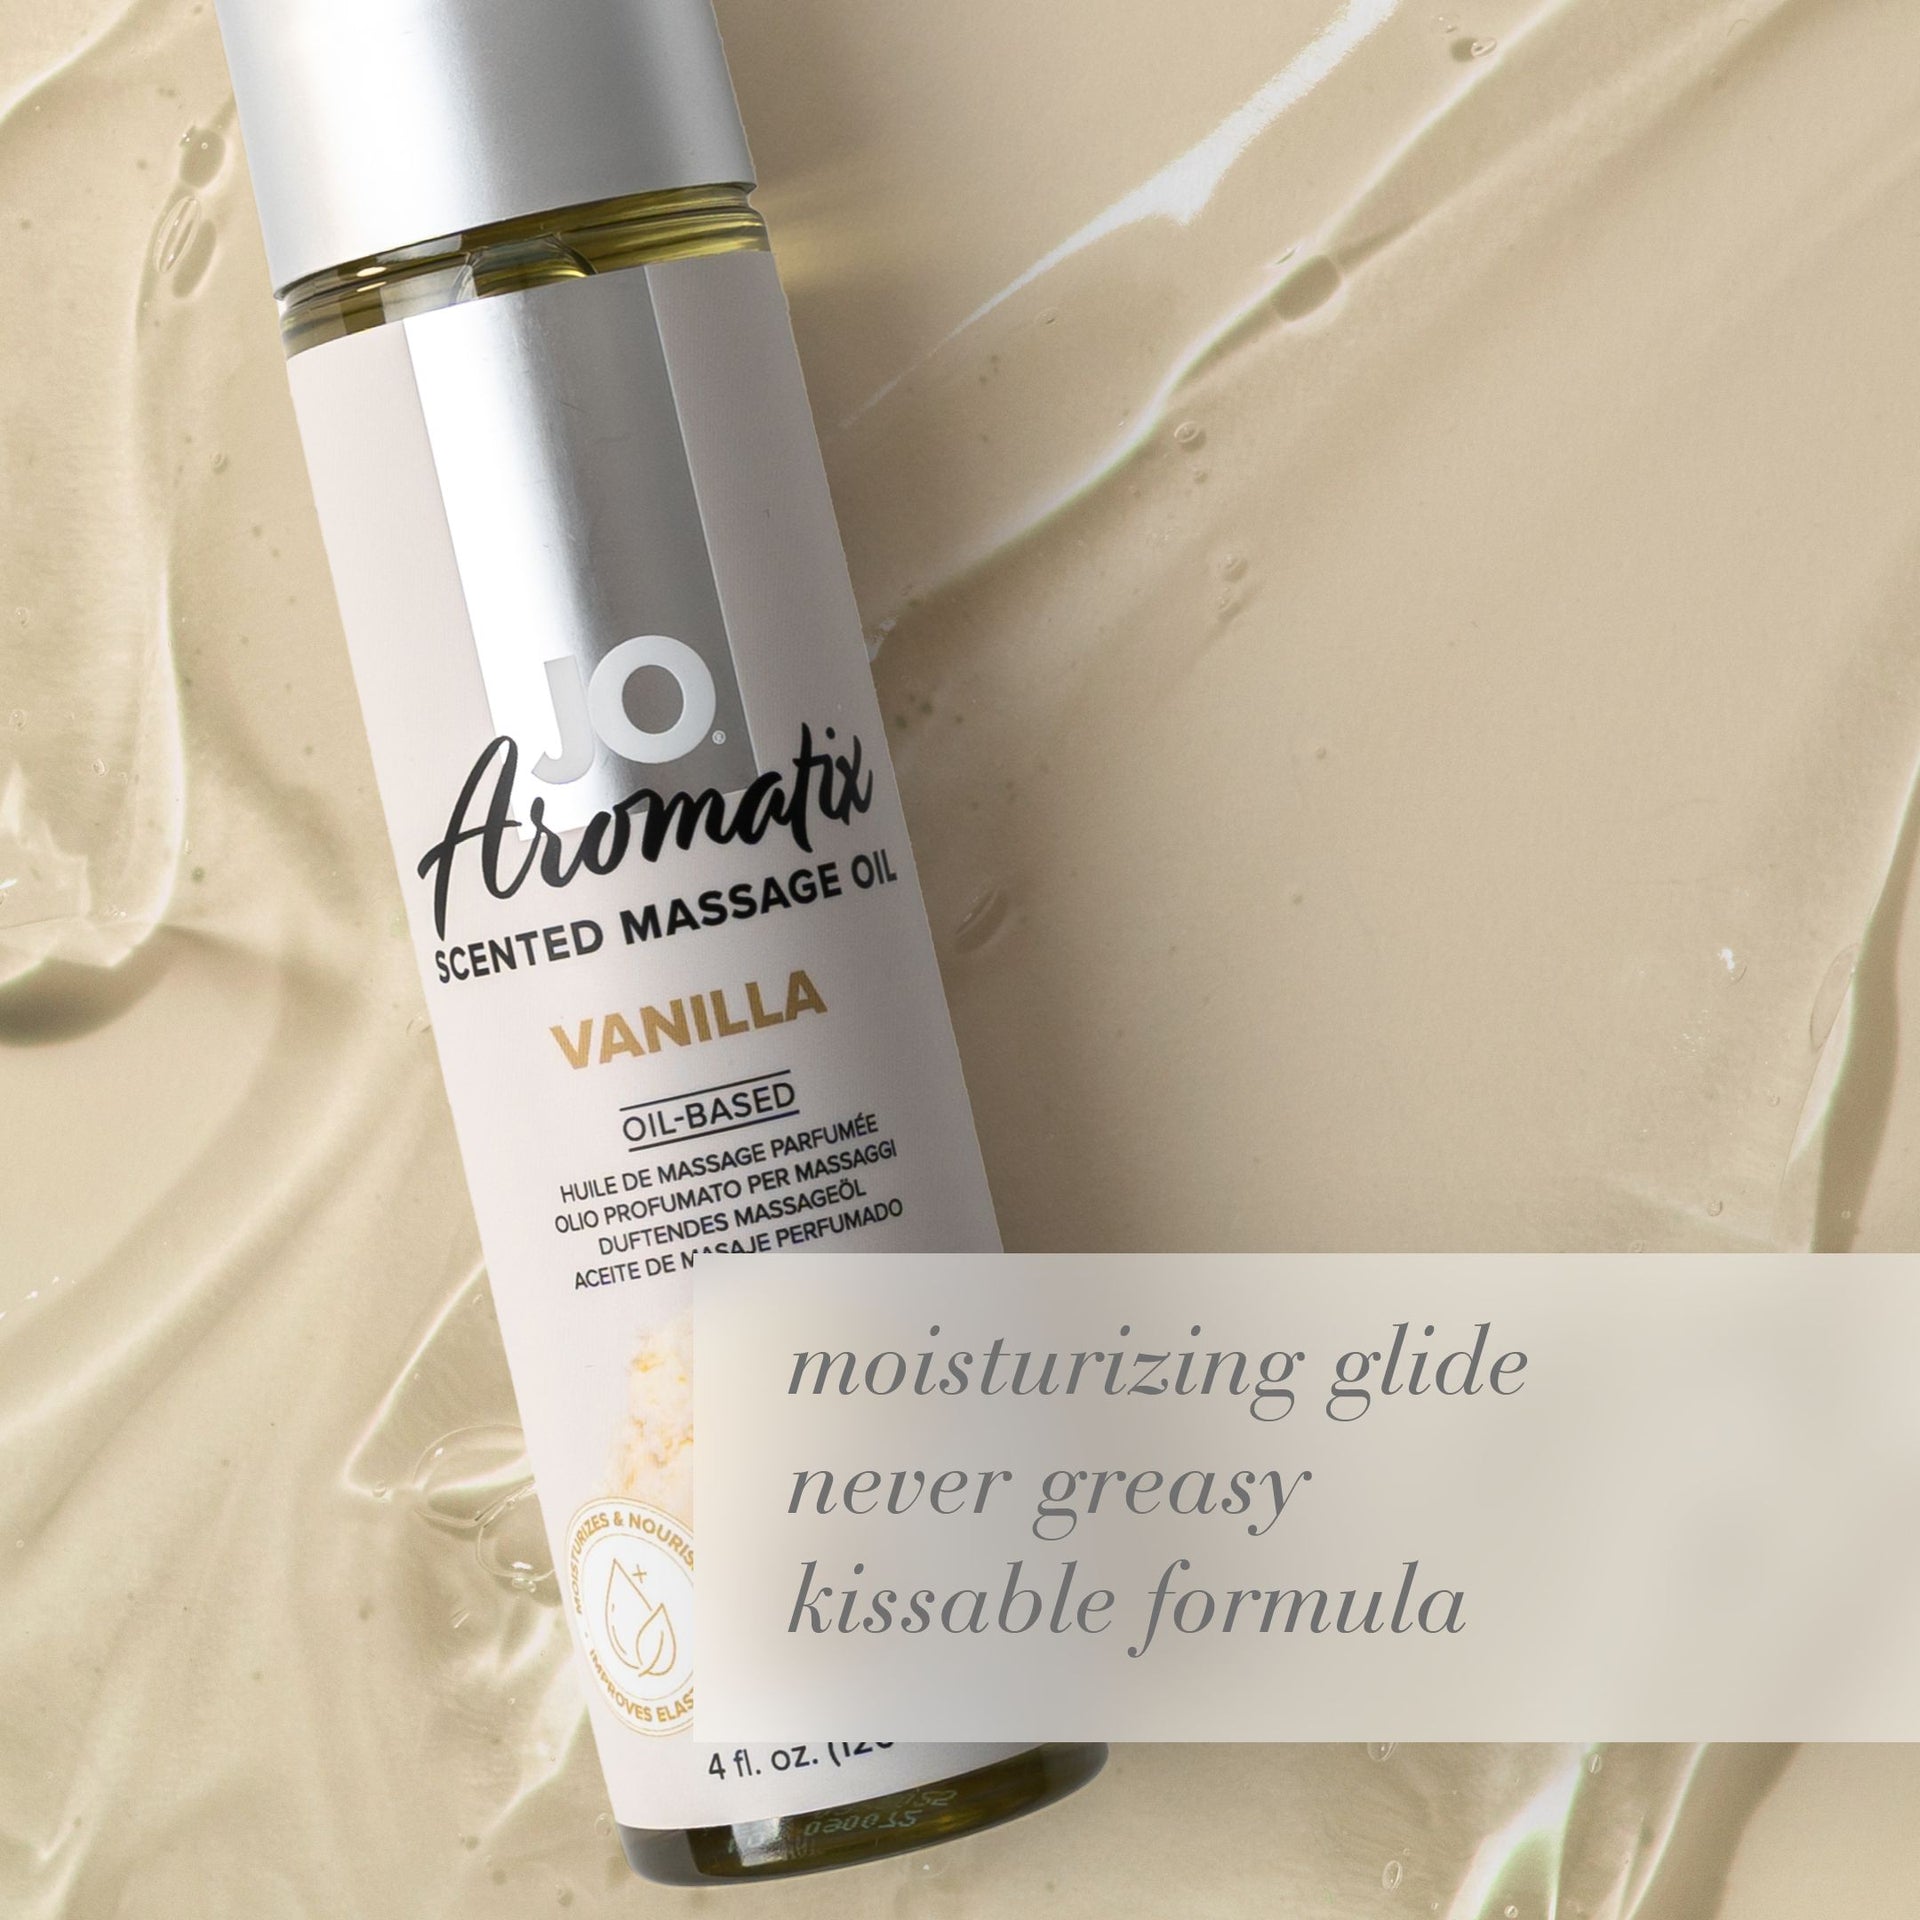 Aromatix Vanilla Scented Massage Oil – JO